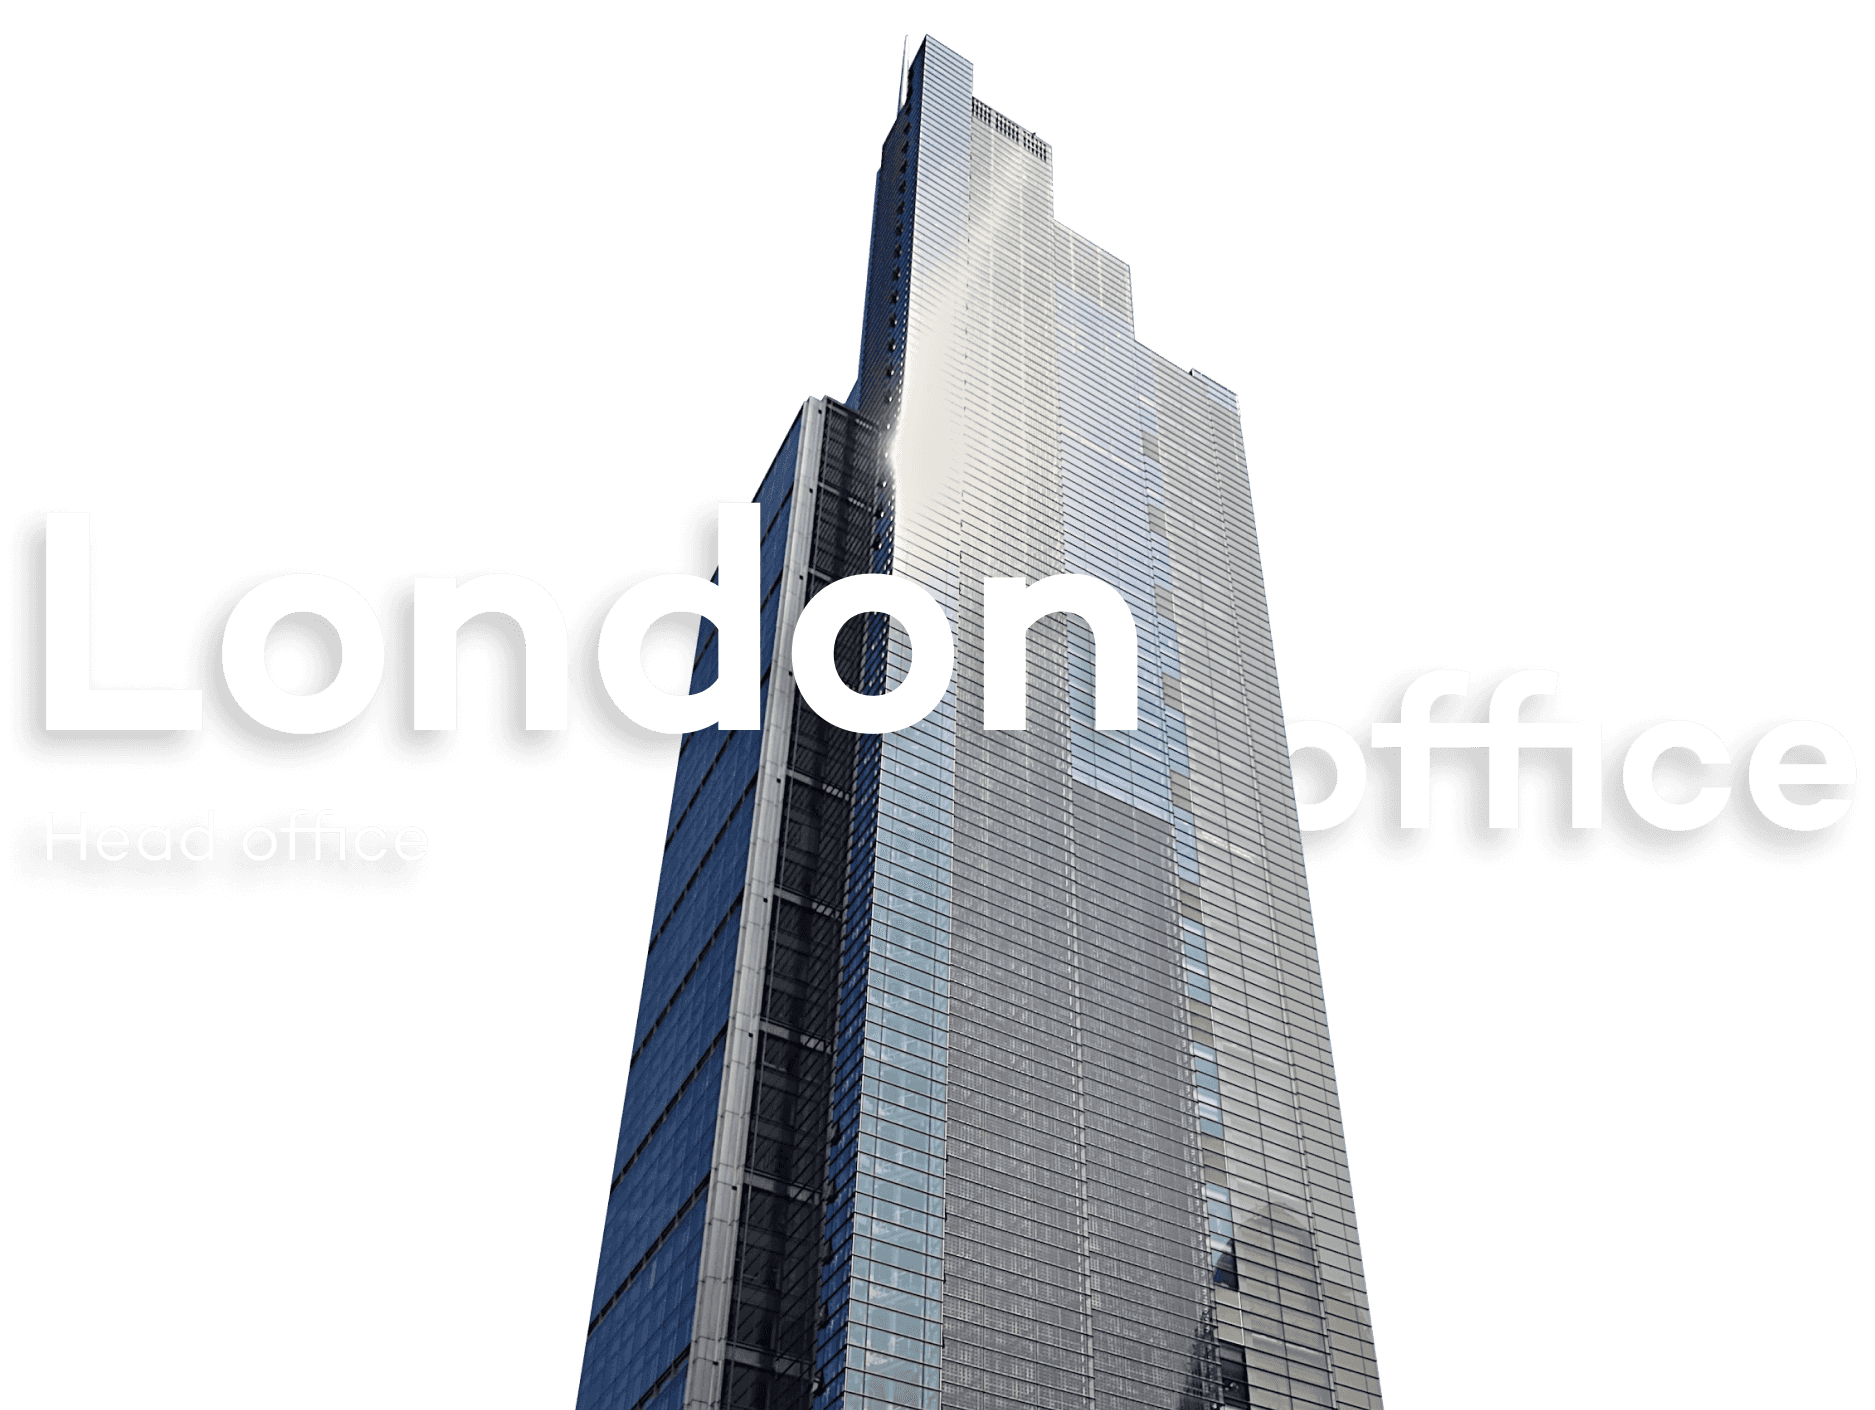 London office. Head office